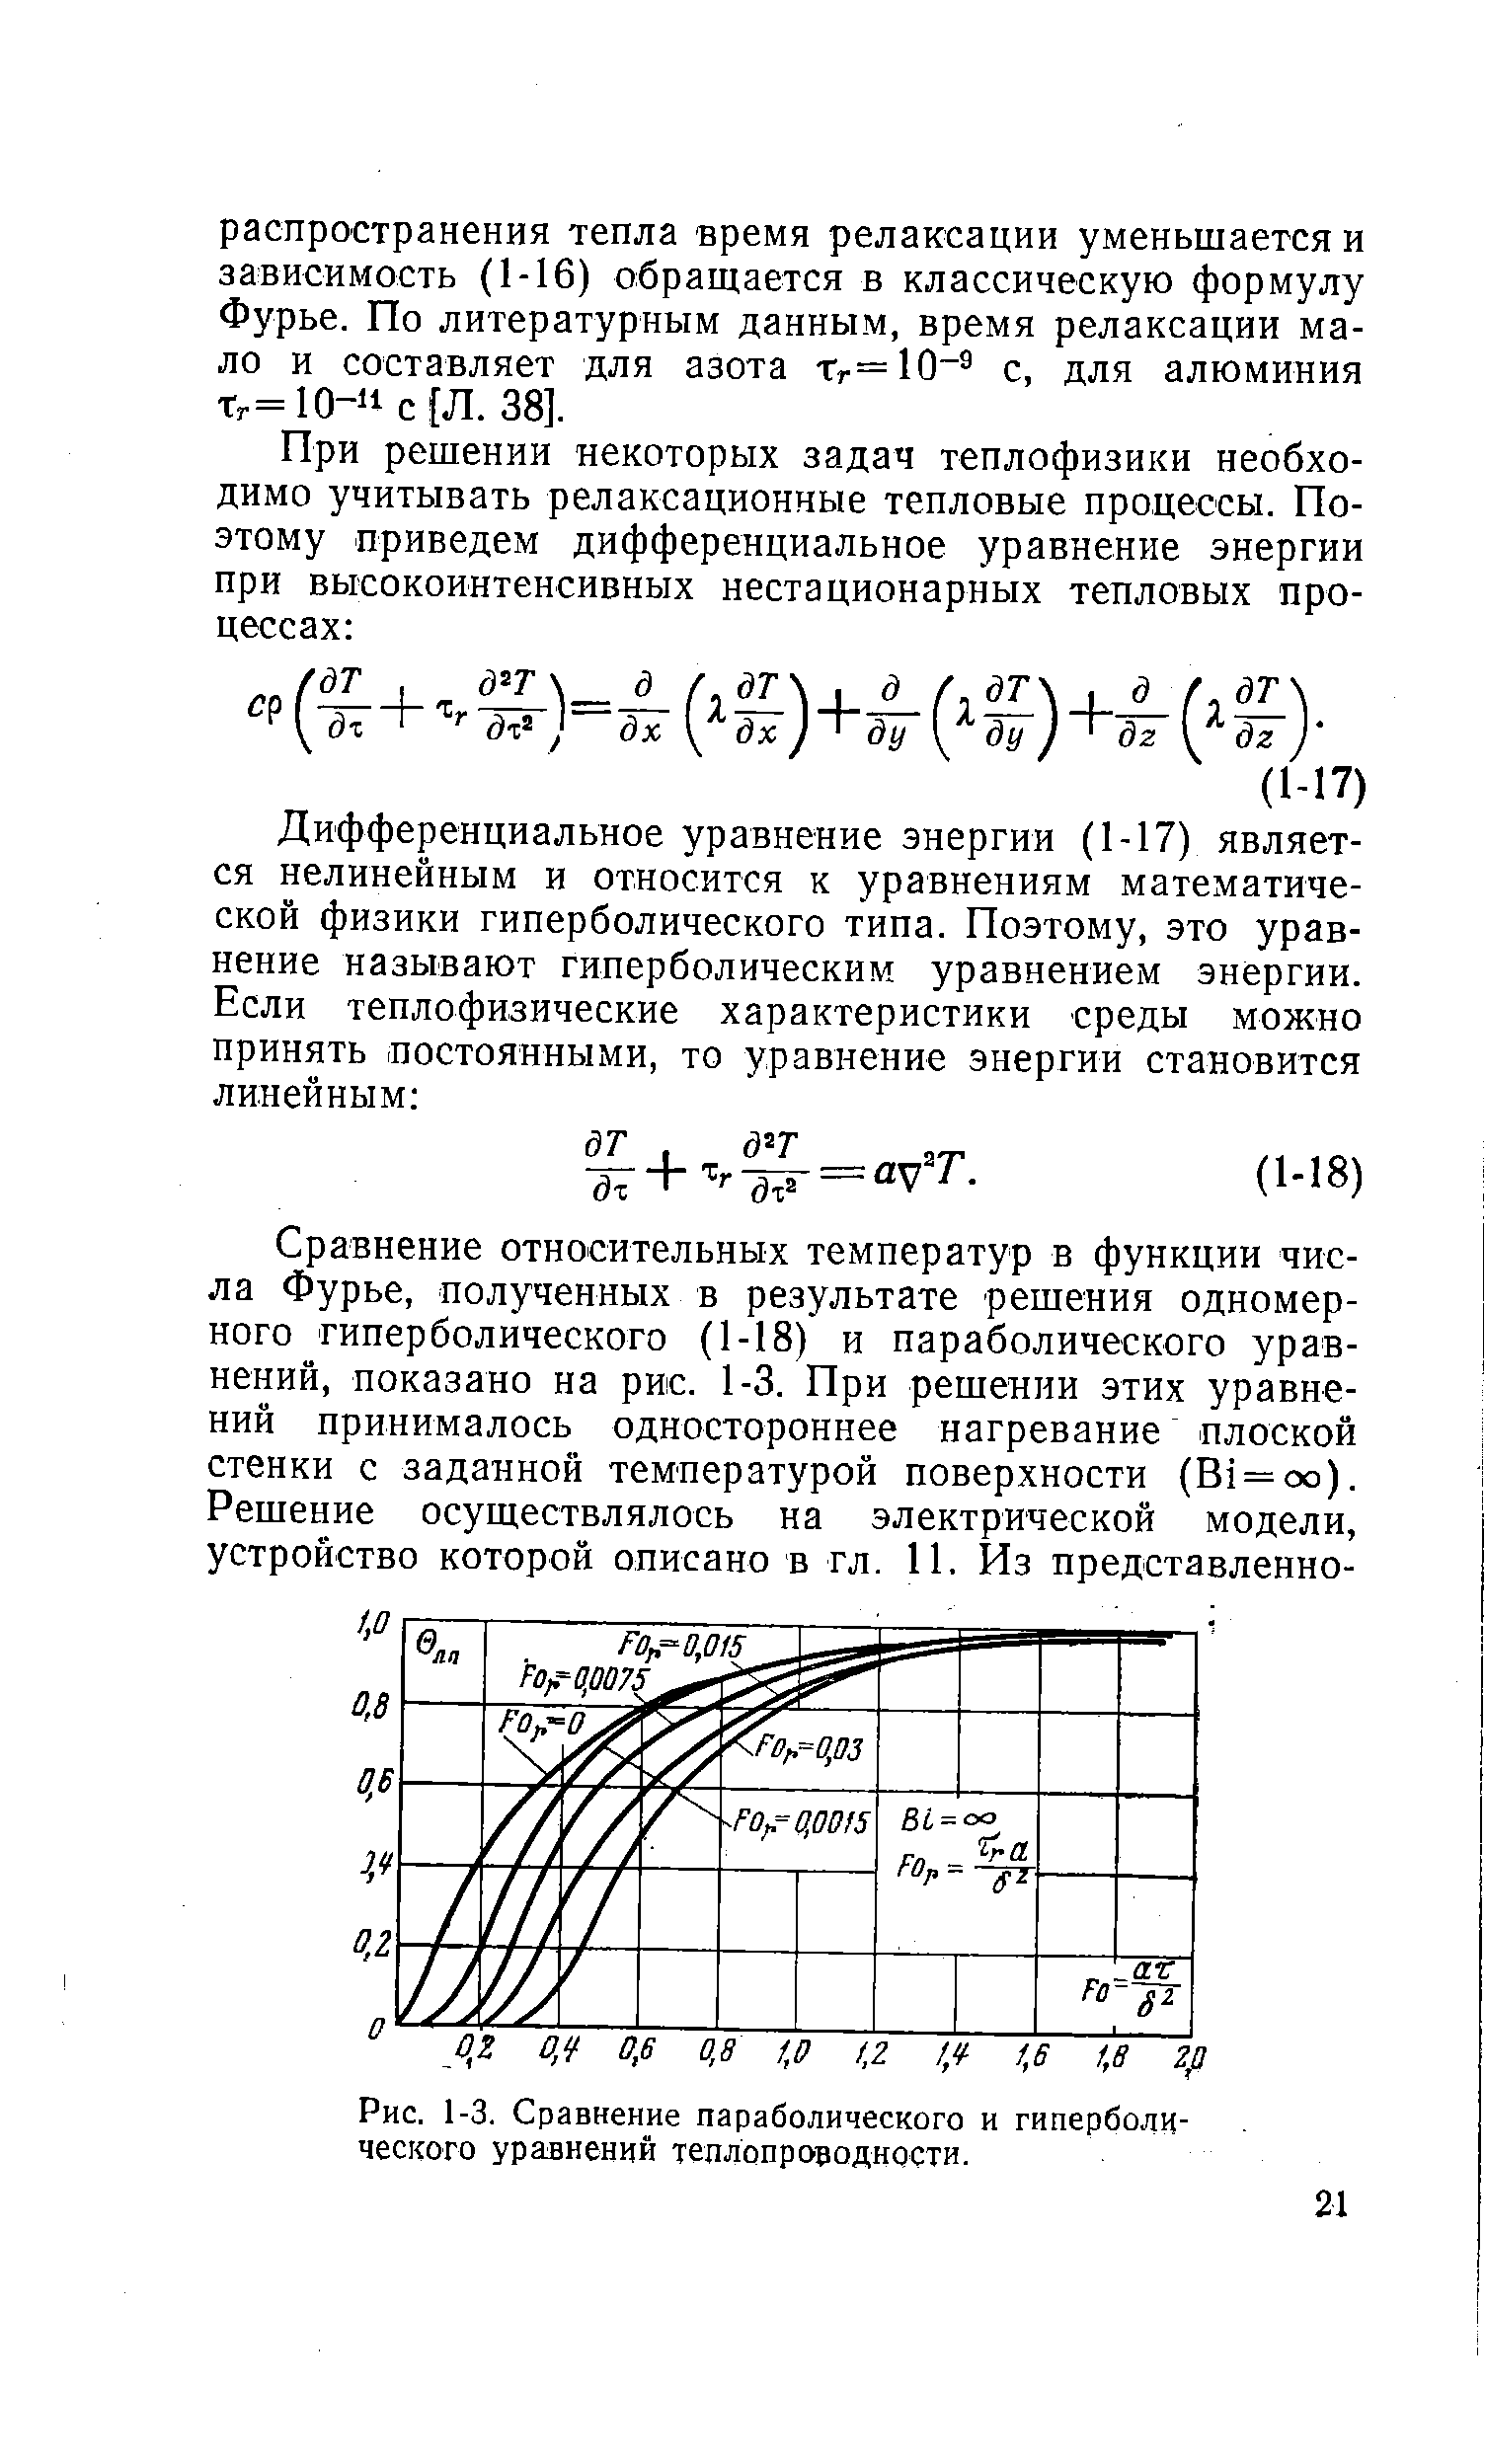 Рис. 1-3. Сравнение параболического и гиперболического уравнений теплопроводности.
